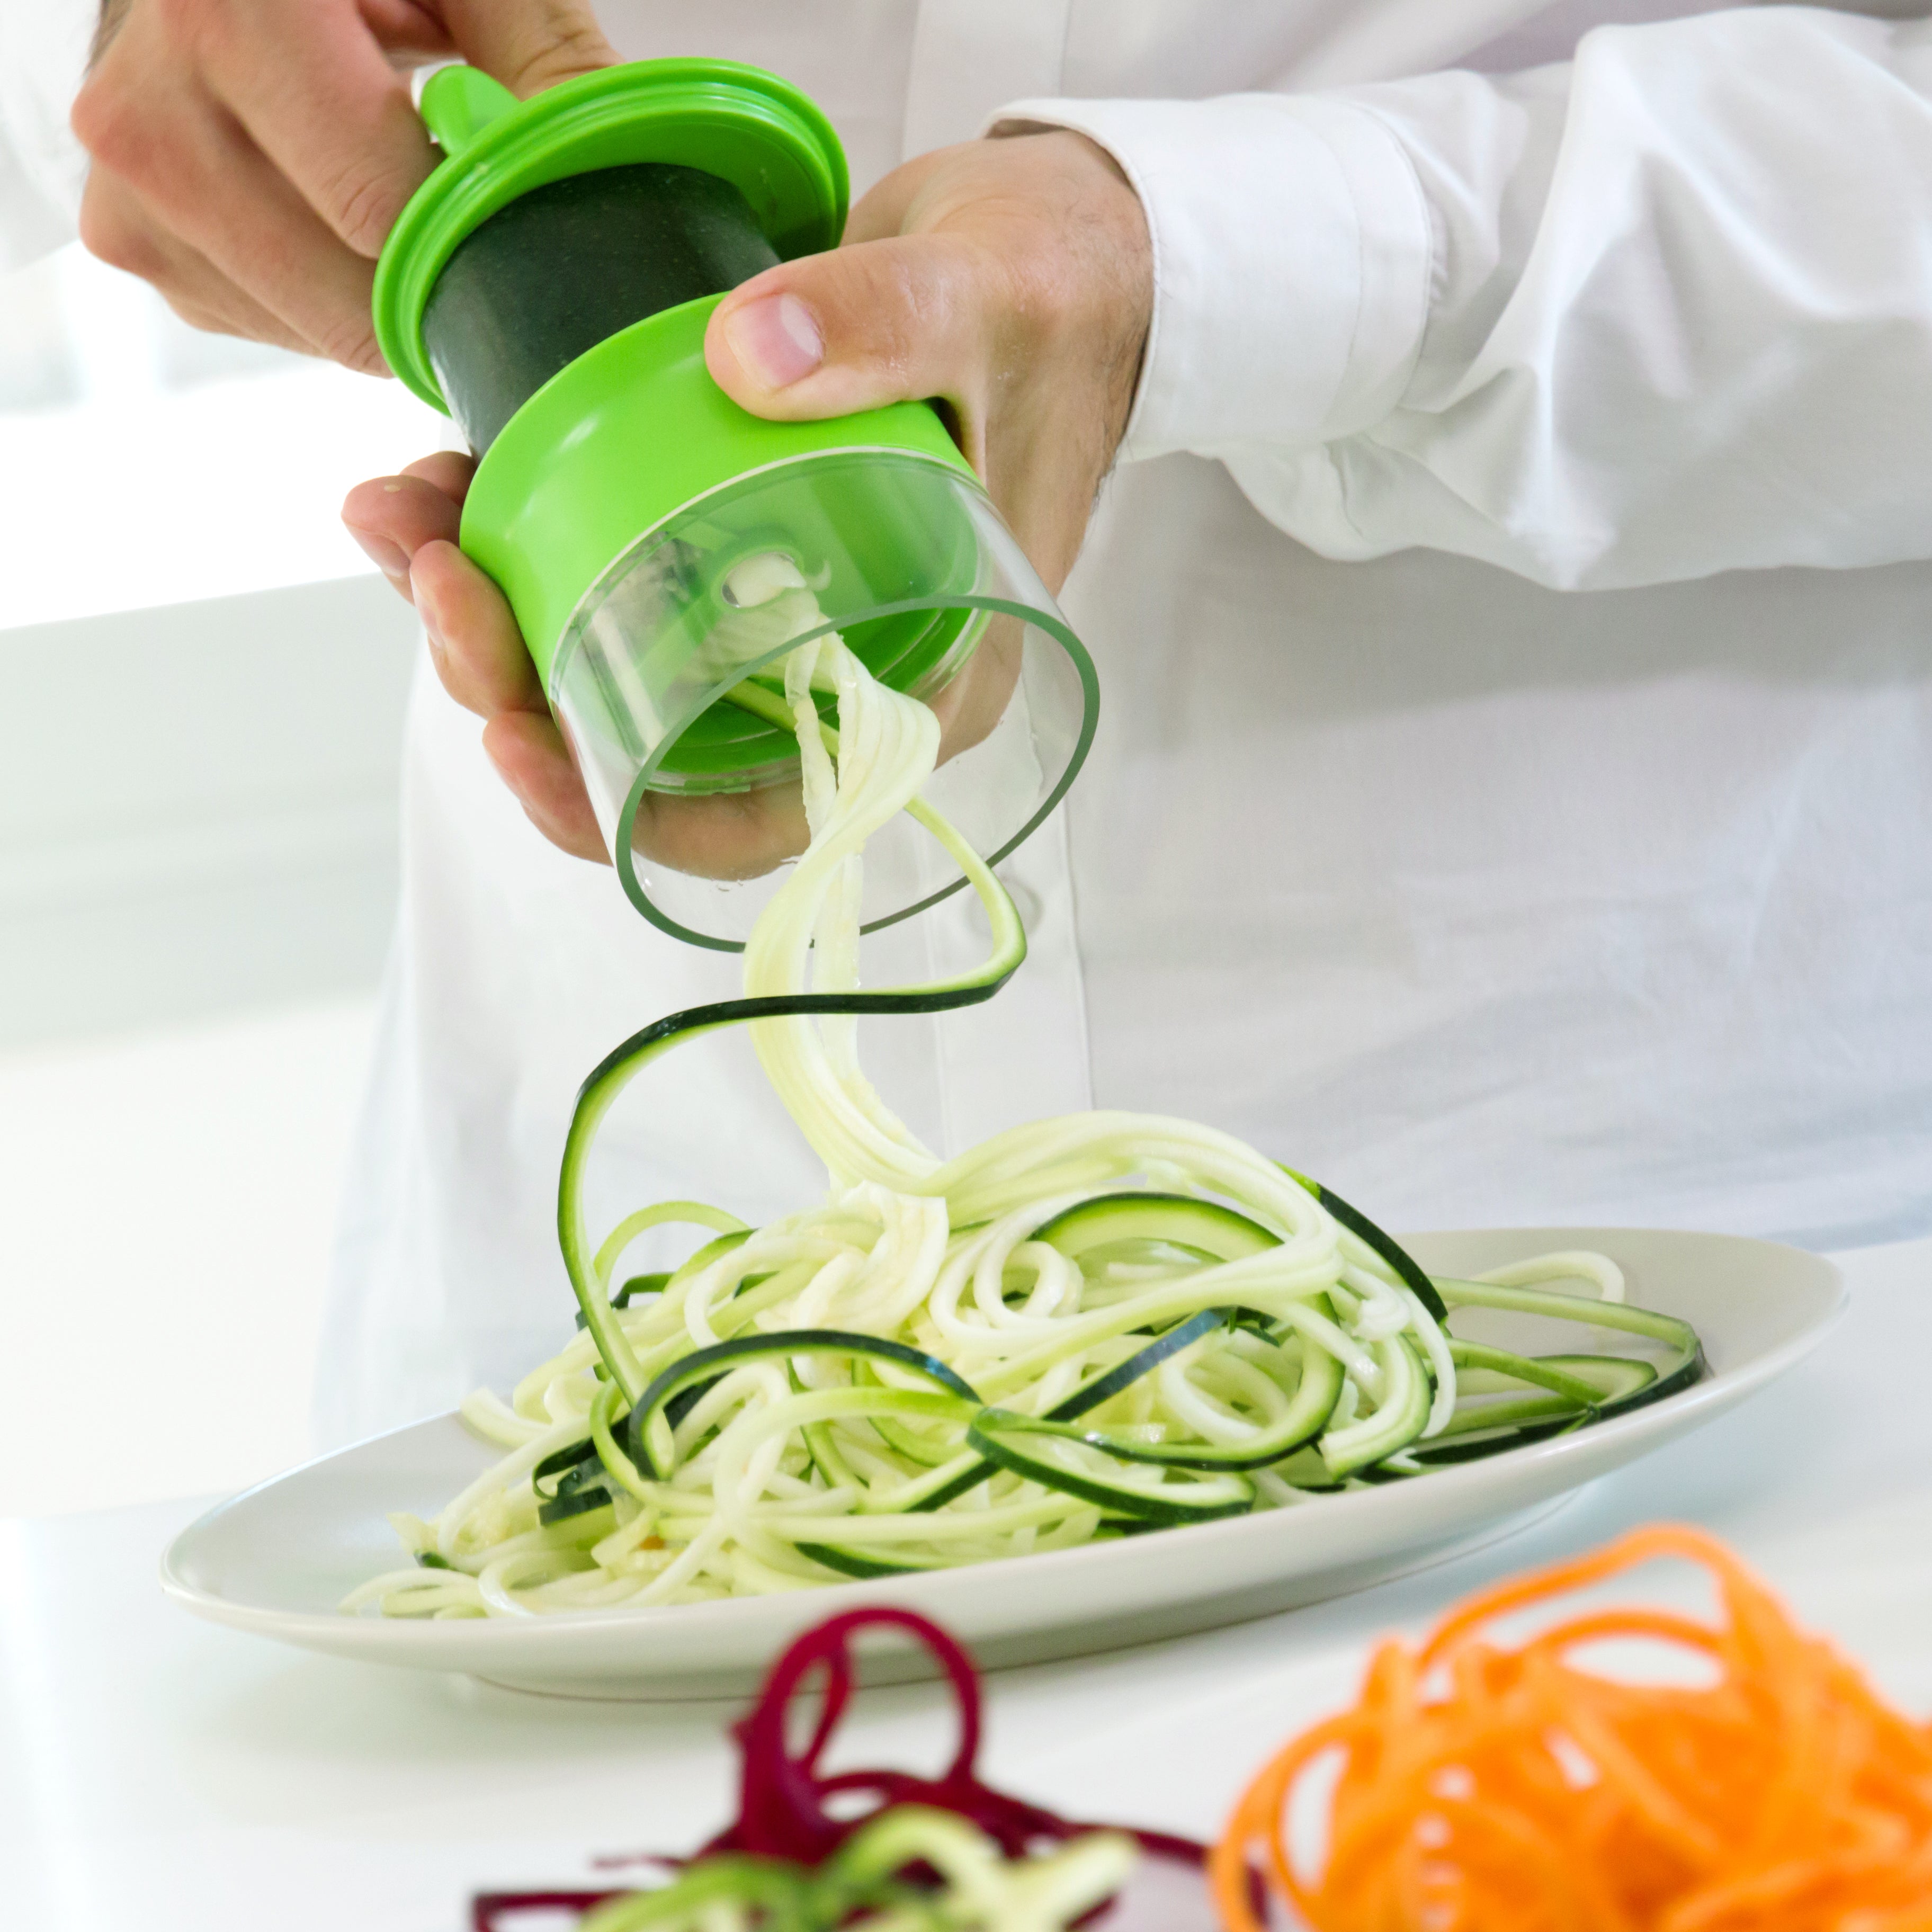 Espiralizador de vegetales: una herramienta de cocina saludable